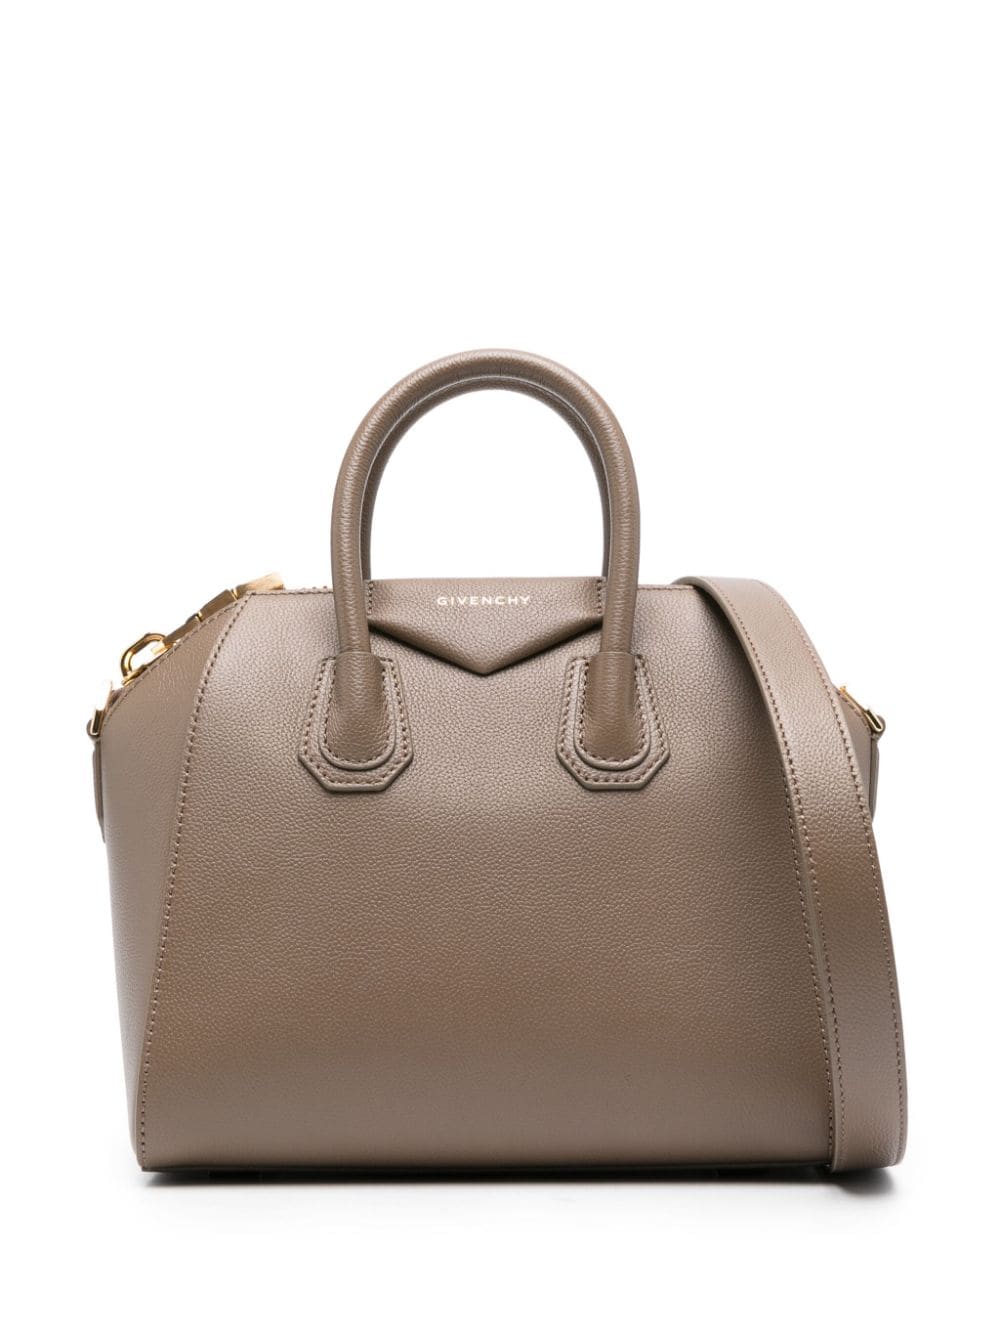 Givenchy medium Antigona leather bag - Brown von Givenchy